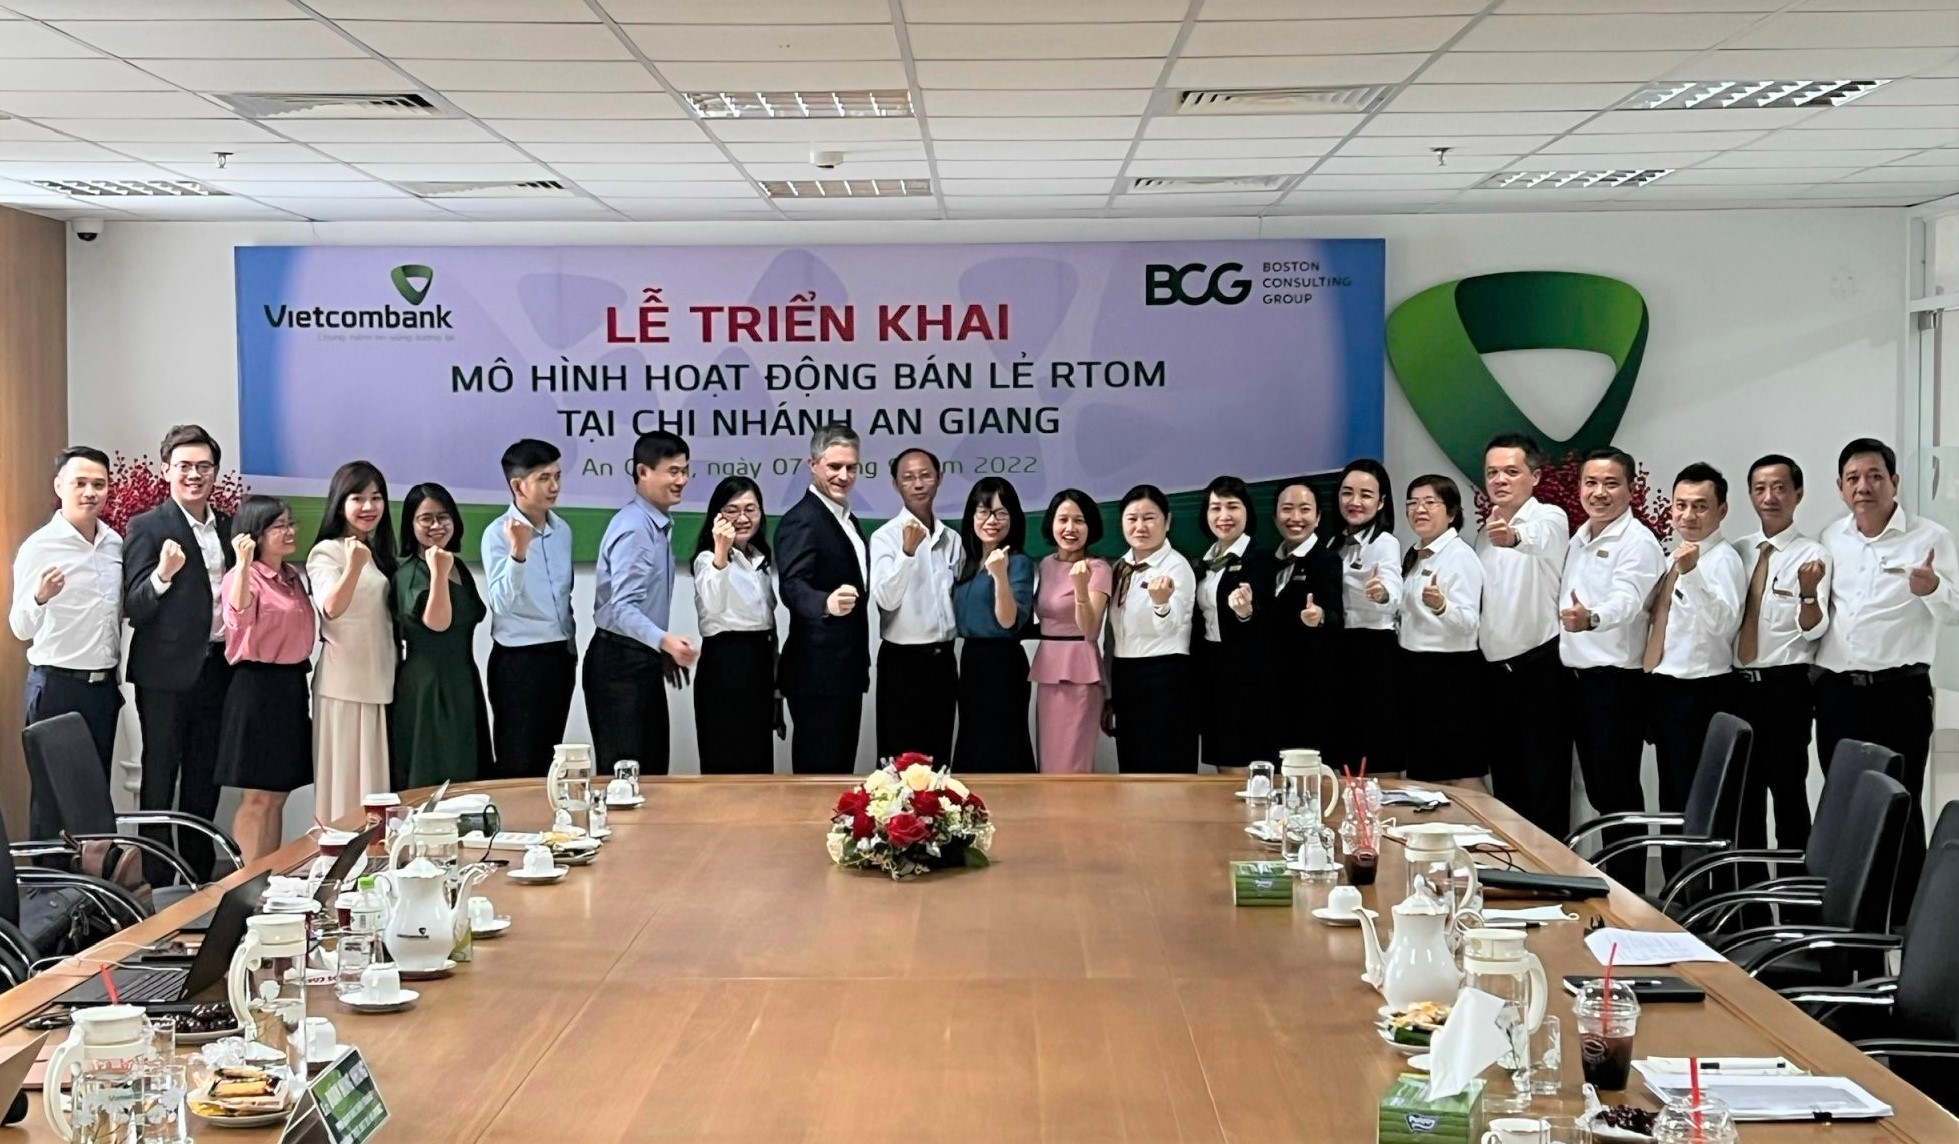 Vietcombank chính thức triển khai mô hình hoạt động bán lẻ RTOM tại chi nhánh An Giang